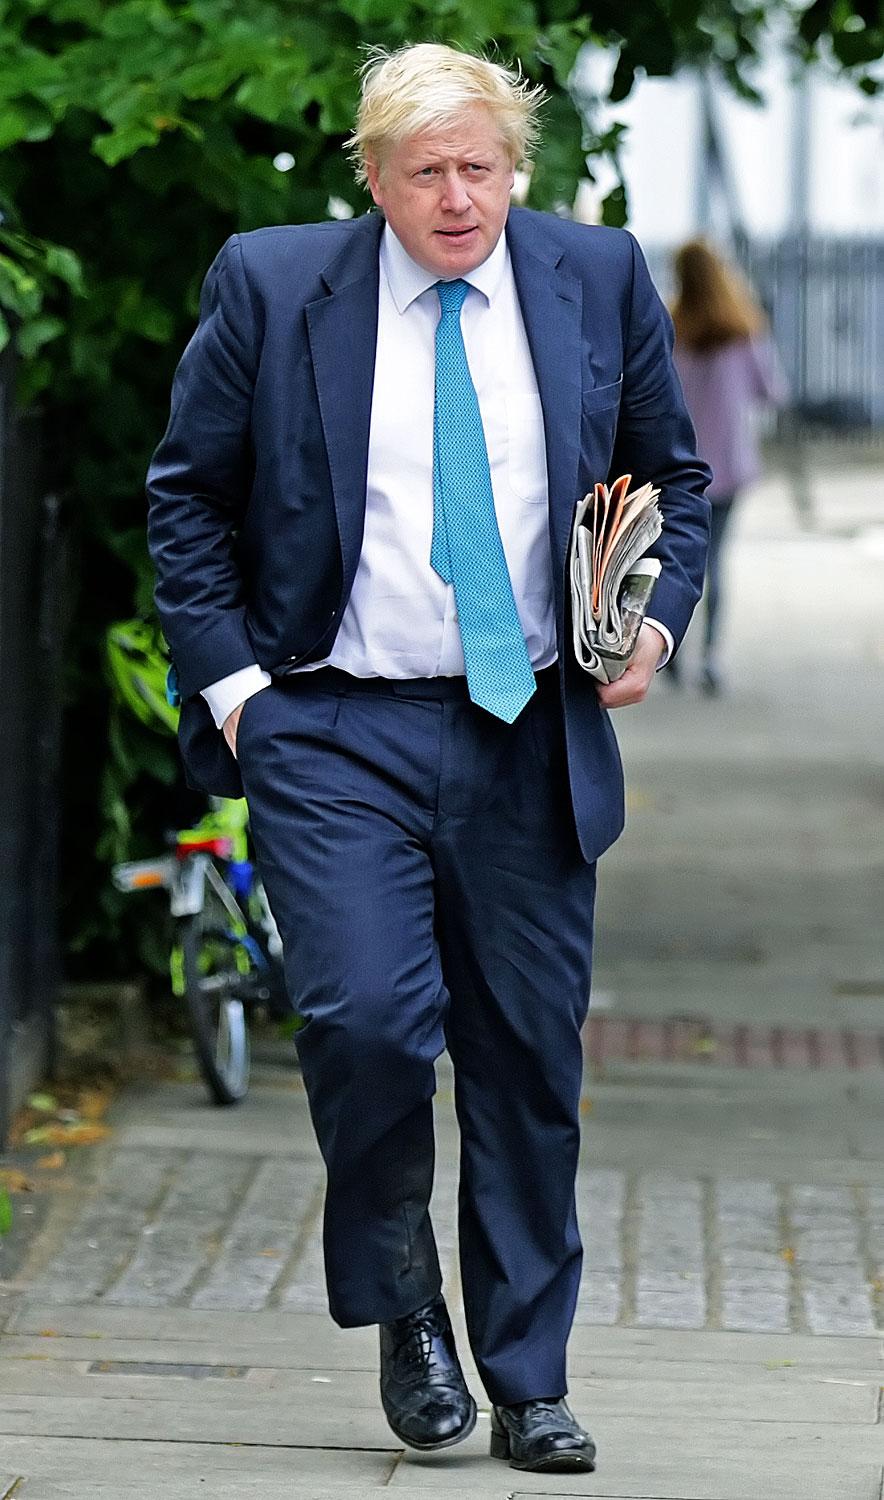 Boris Johnson elsiet. Felelőtlenséggel vádolják